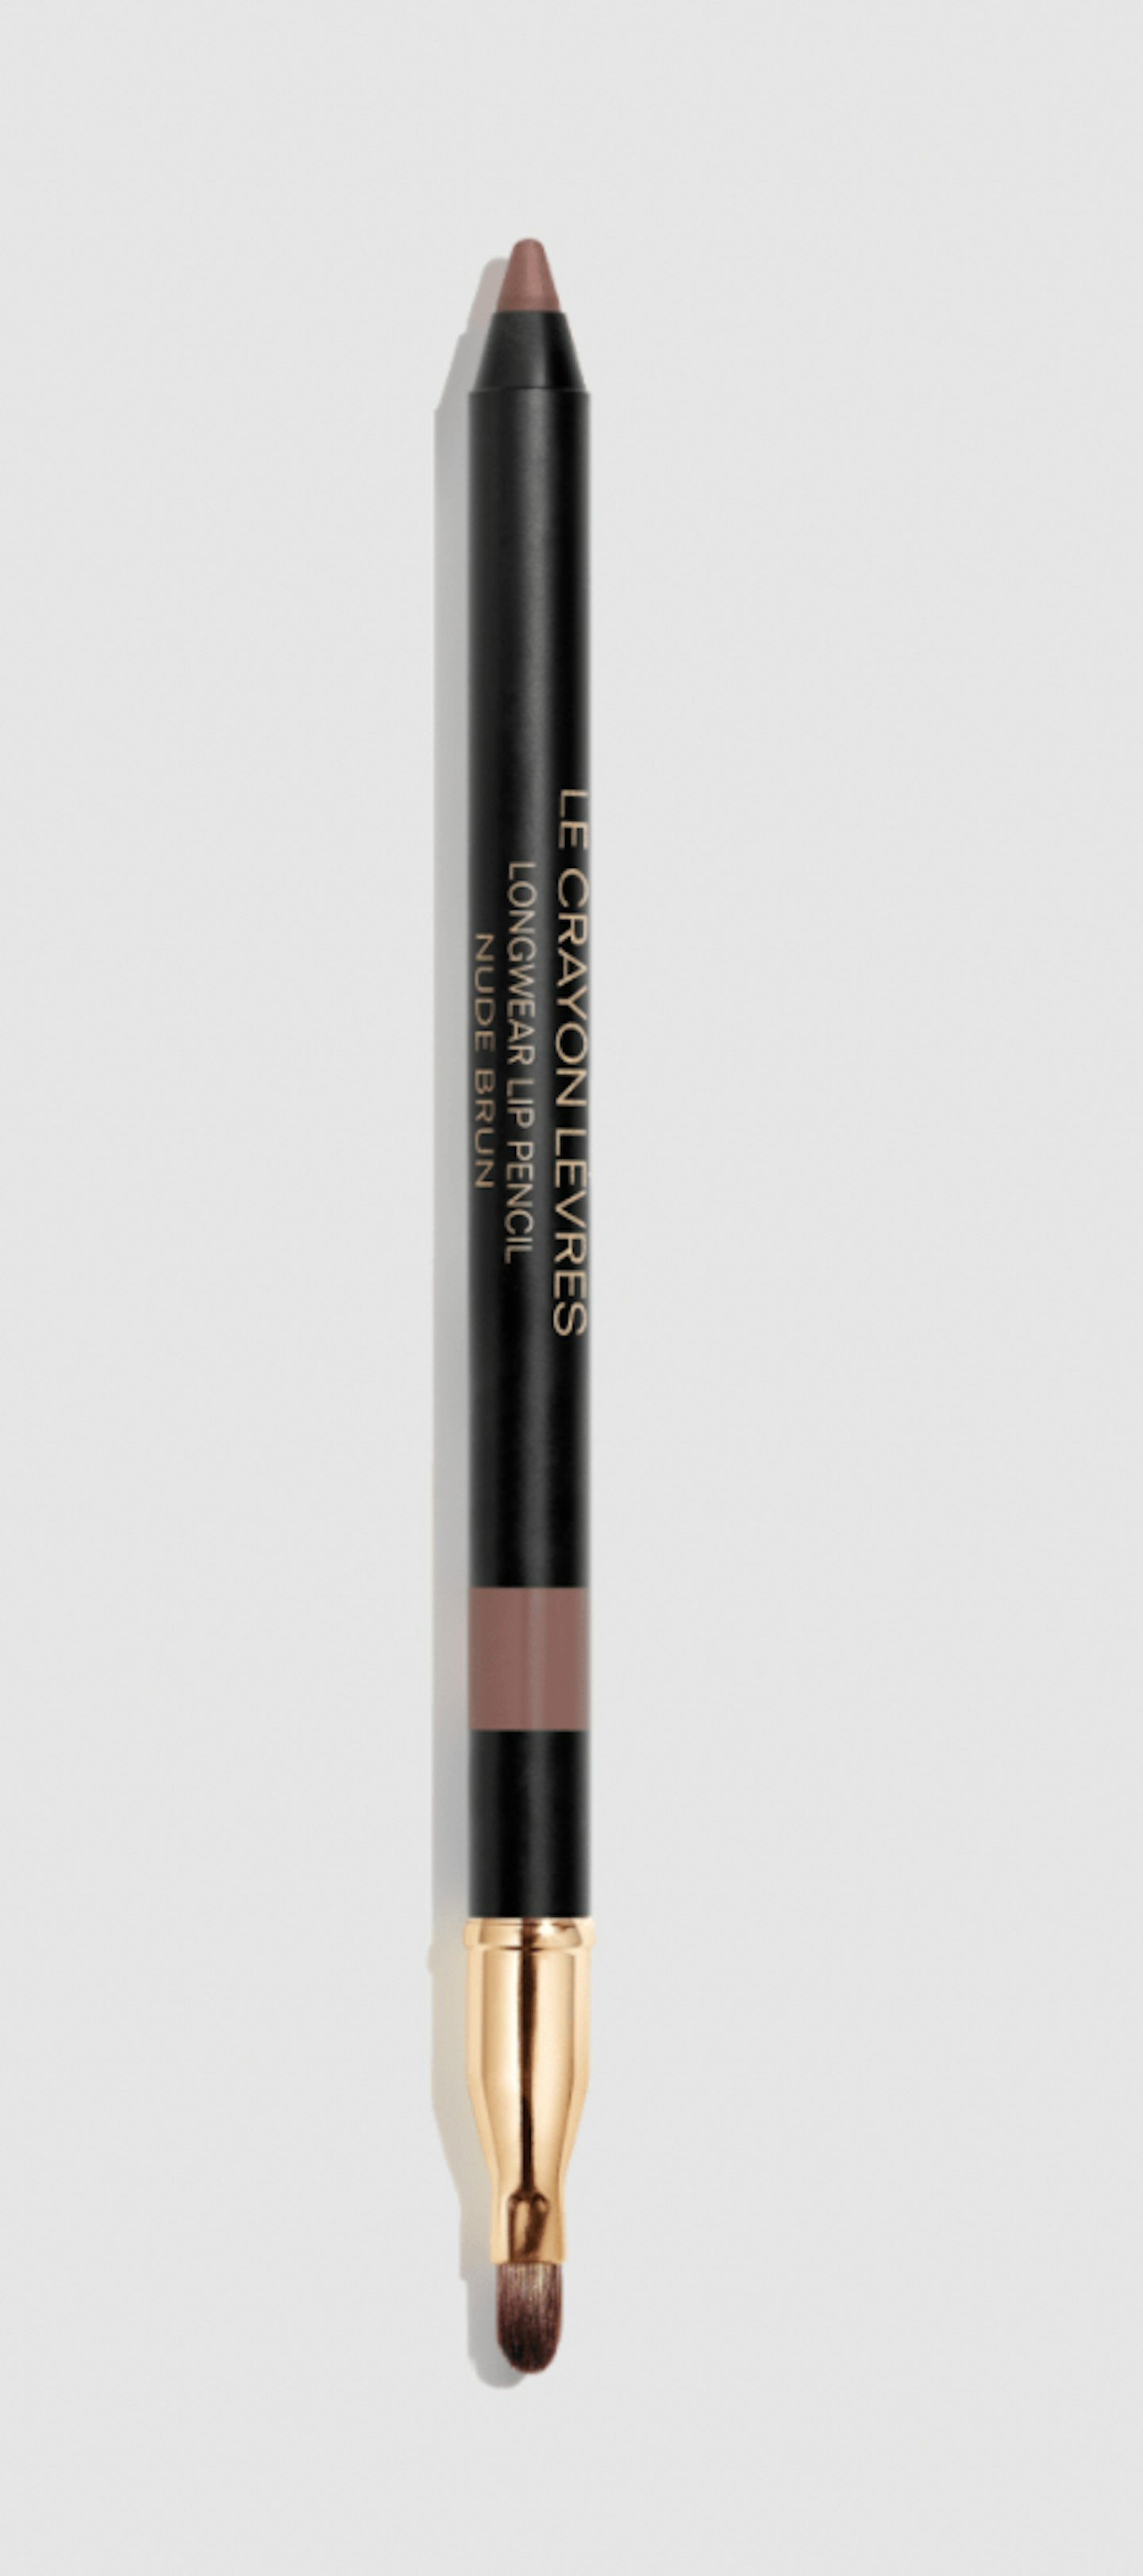 Chanel Longwear Lip Pencil, Nude Burn, £22